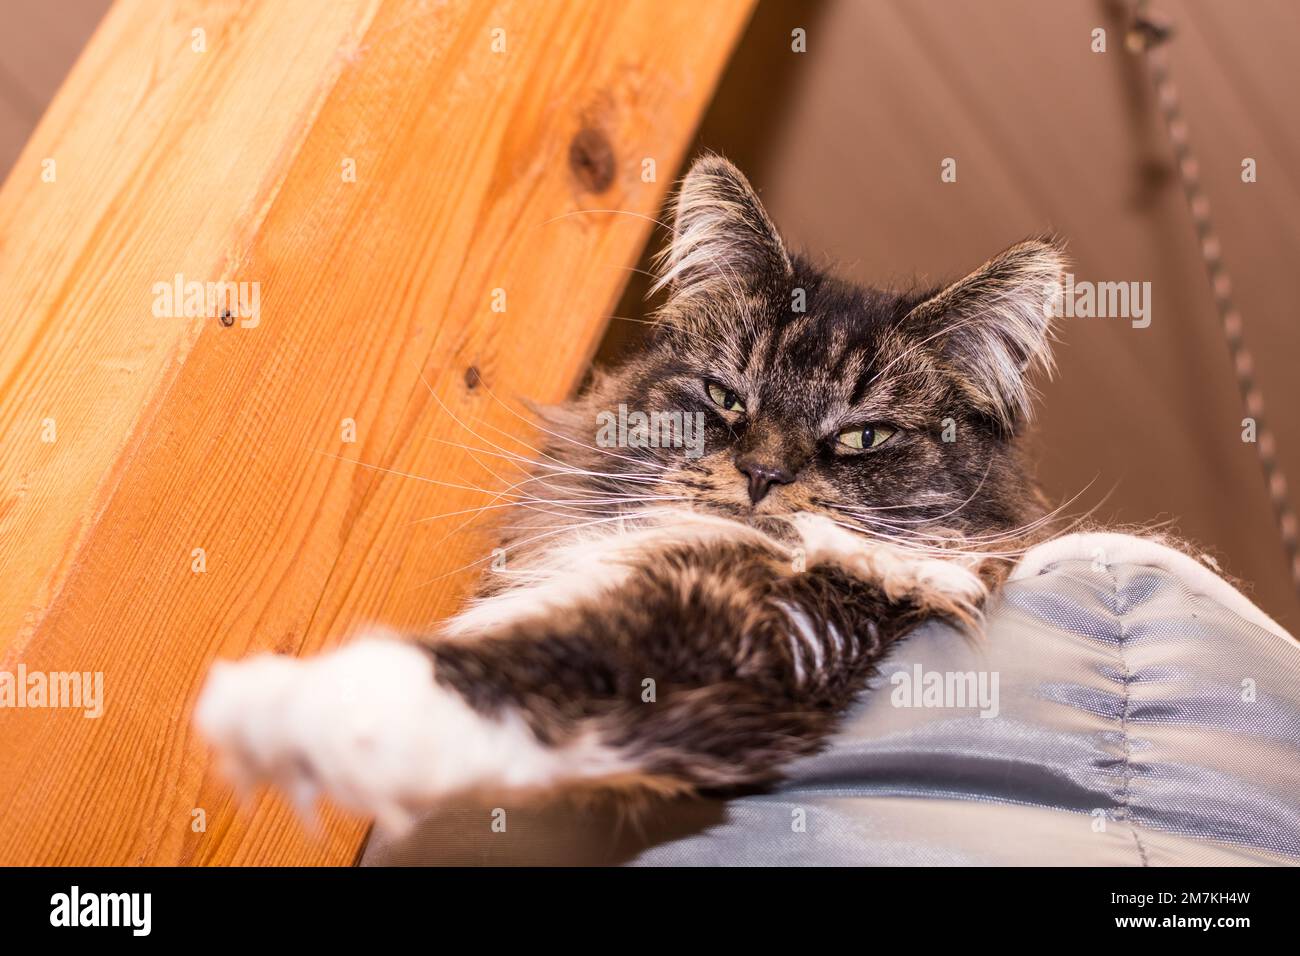 caro soffice gatto maine coon si trova nel suo letto e si allunga verso l'esterno una zampa Foto Stock